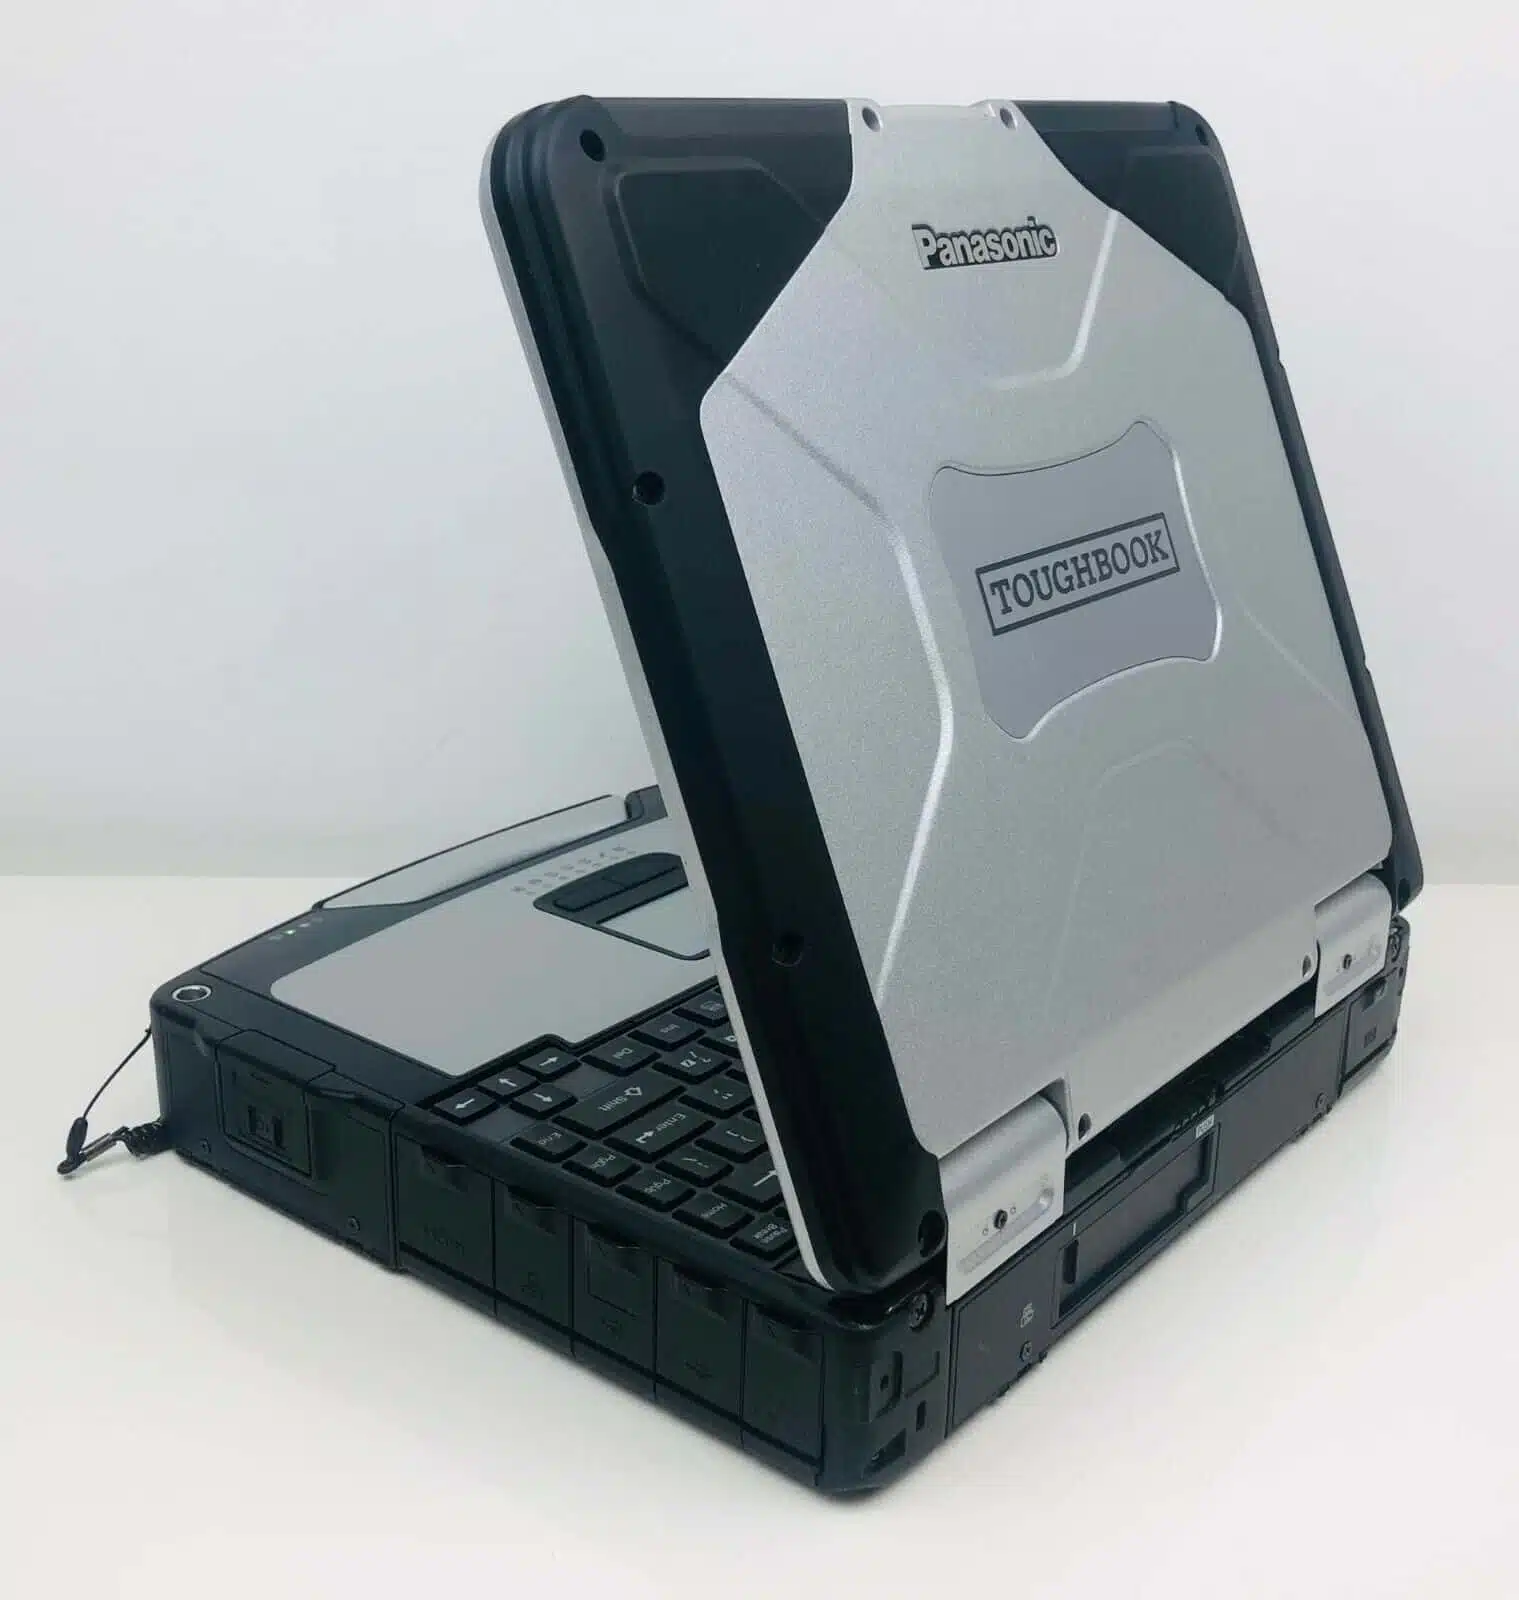 Panasonic Toughbook mk4 core i5 - klasa wojskowa